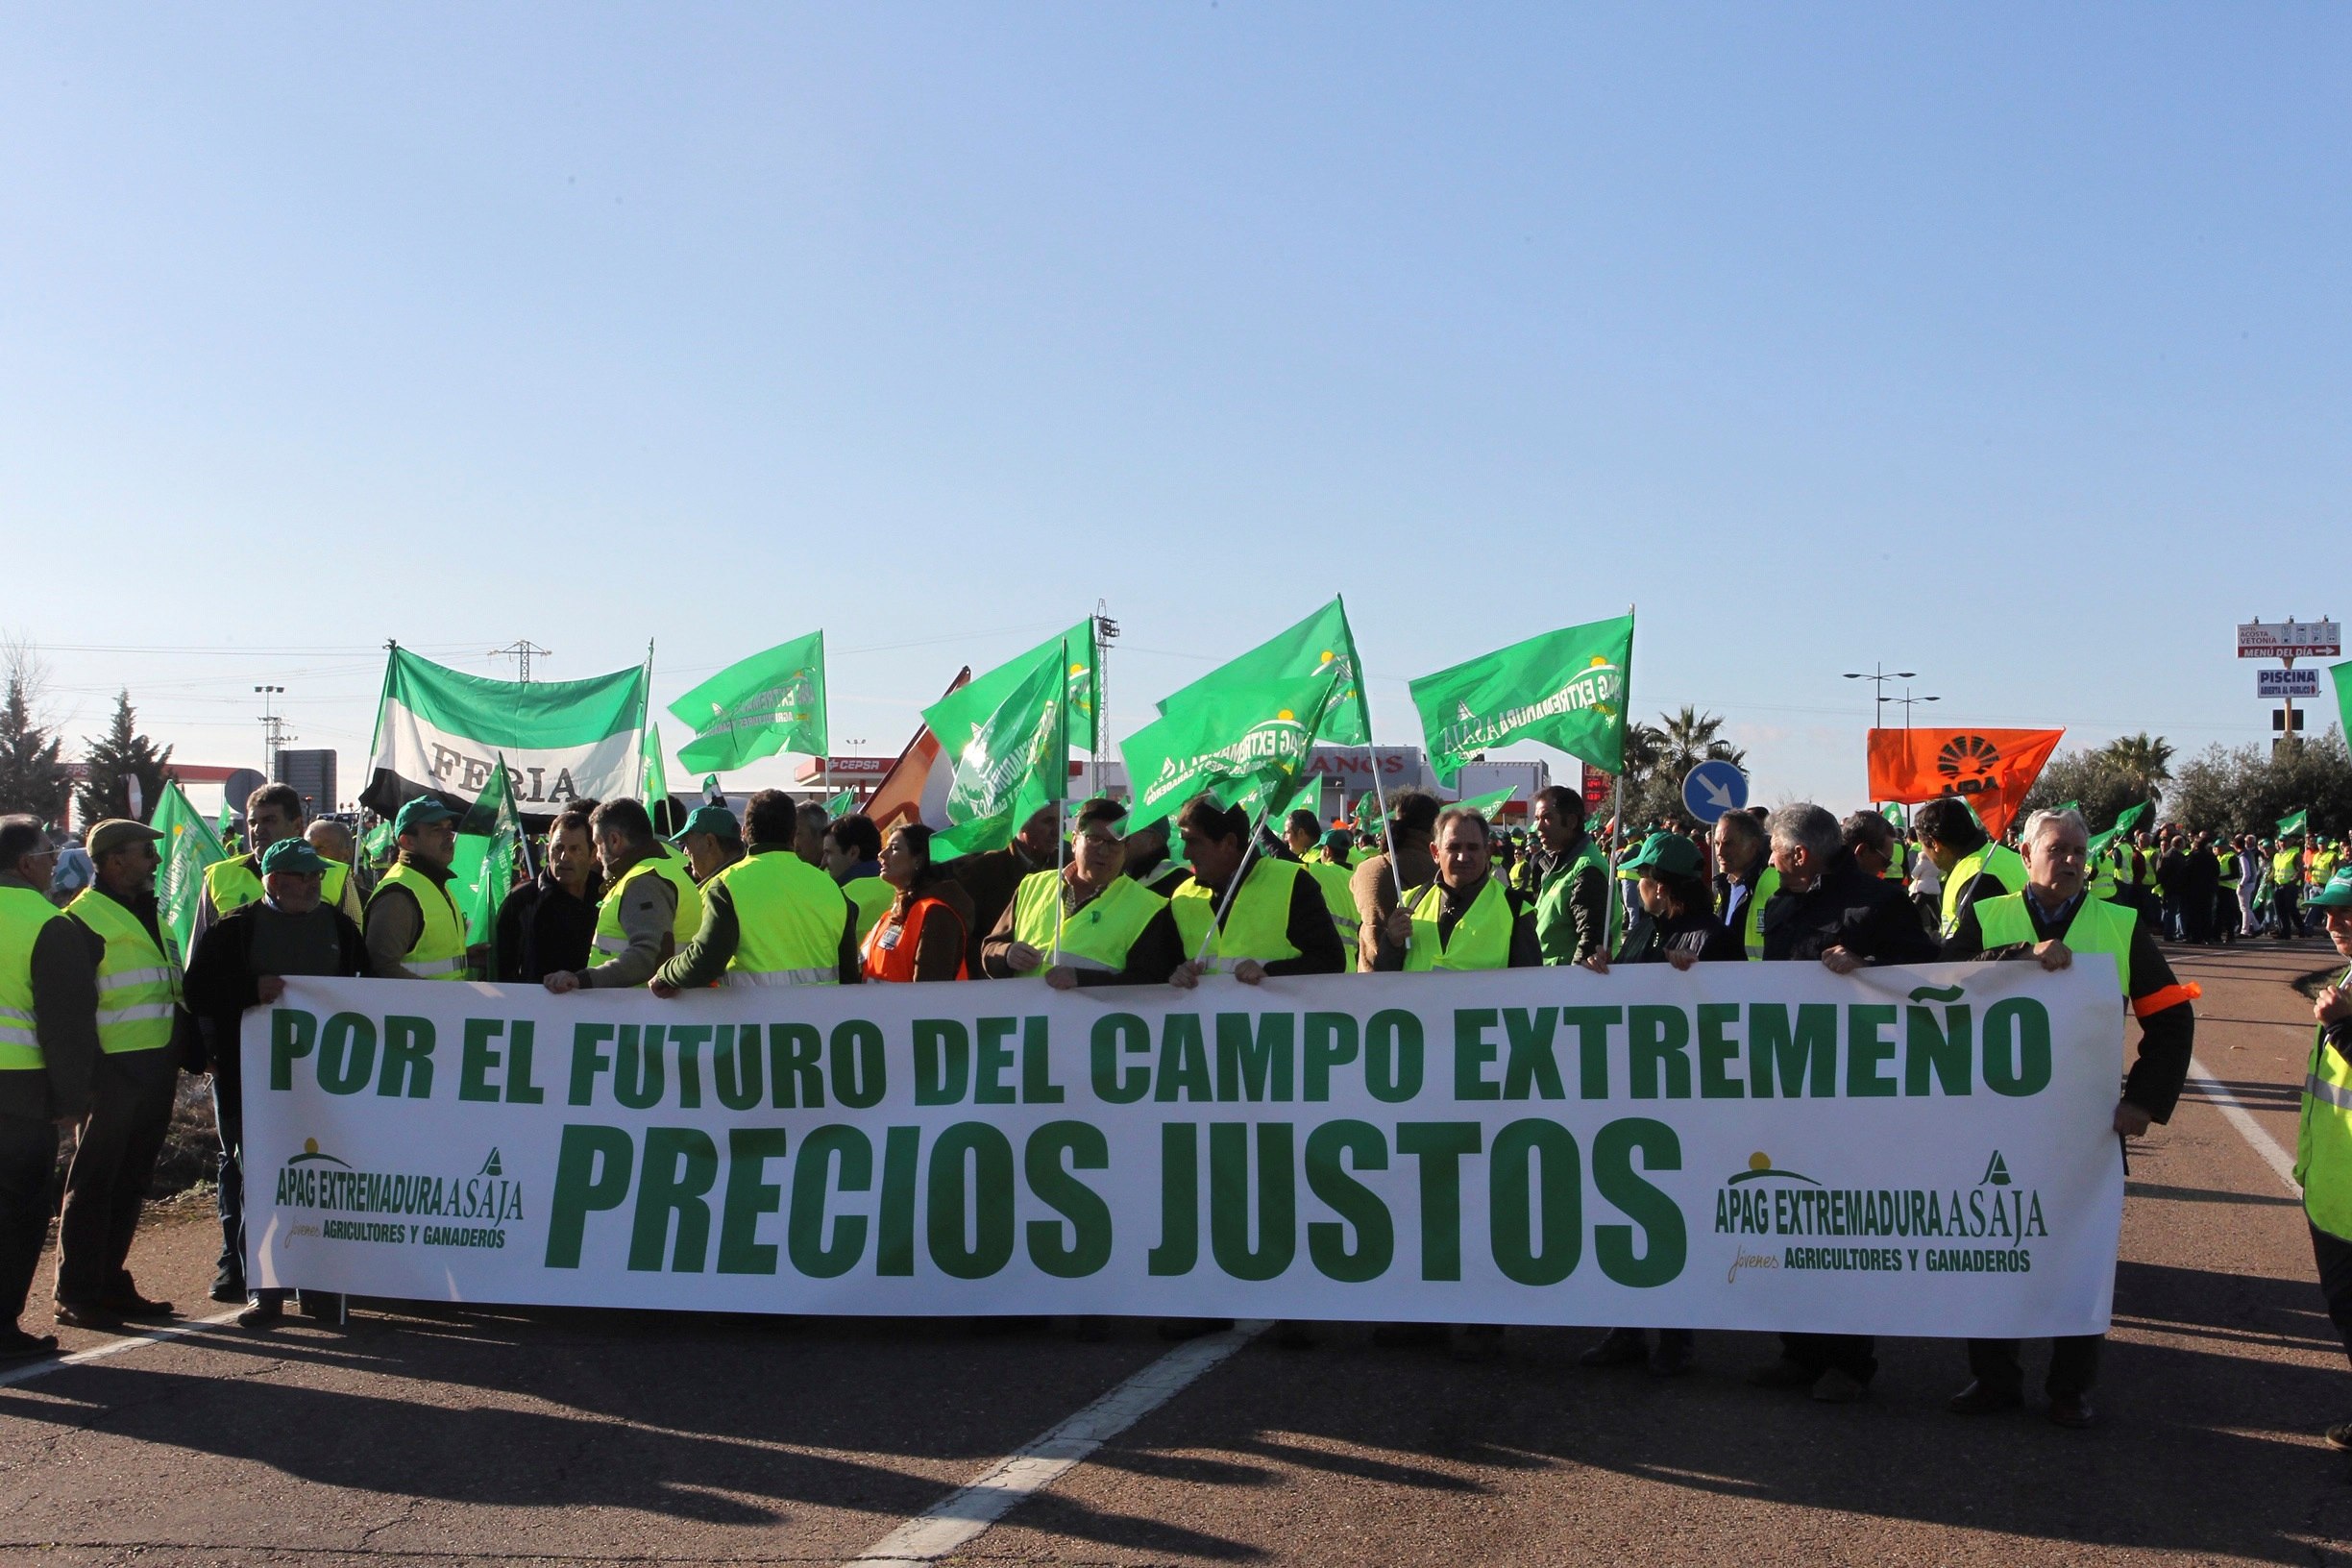 Carreteras cortadas en Extremadura por la huelga de agricultores